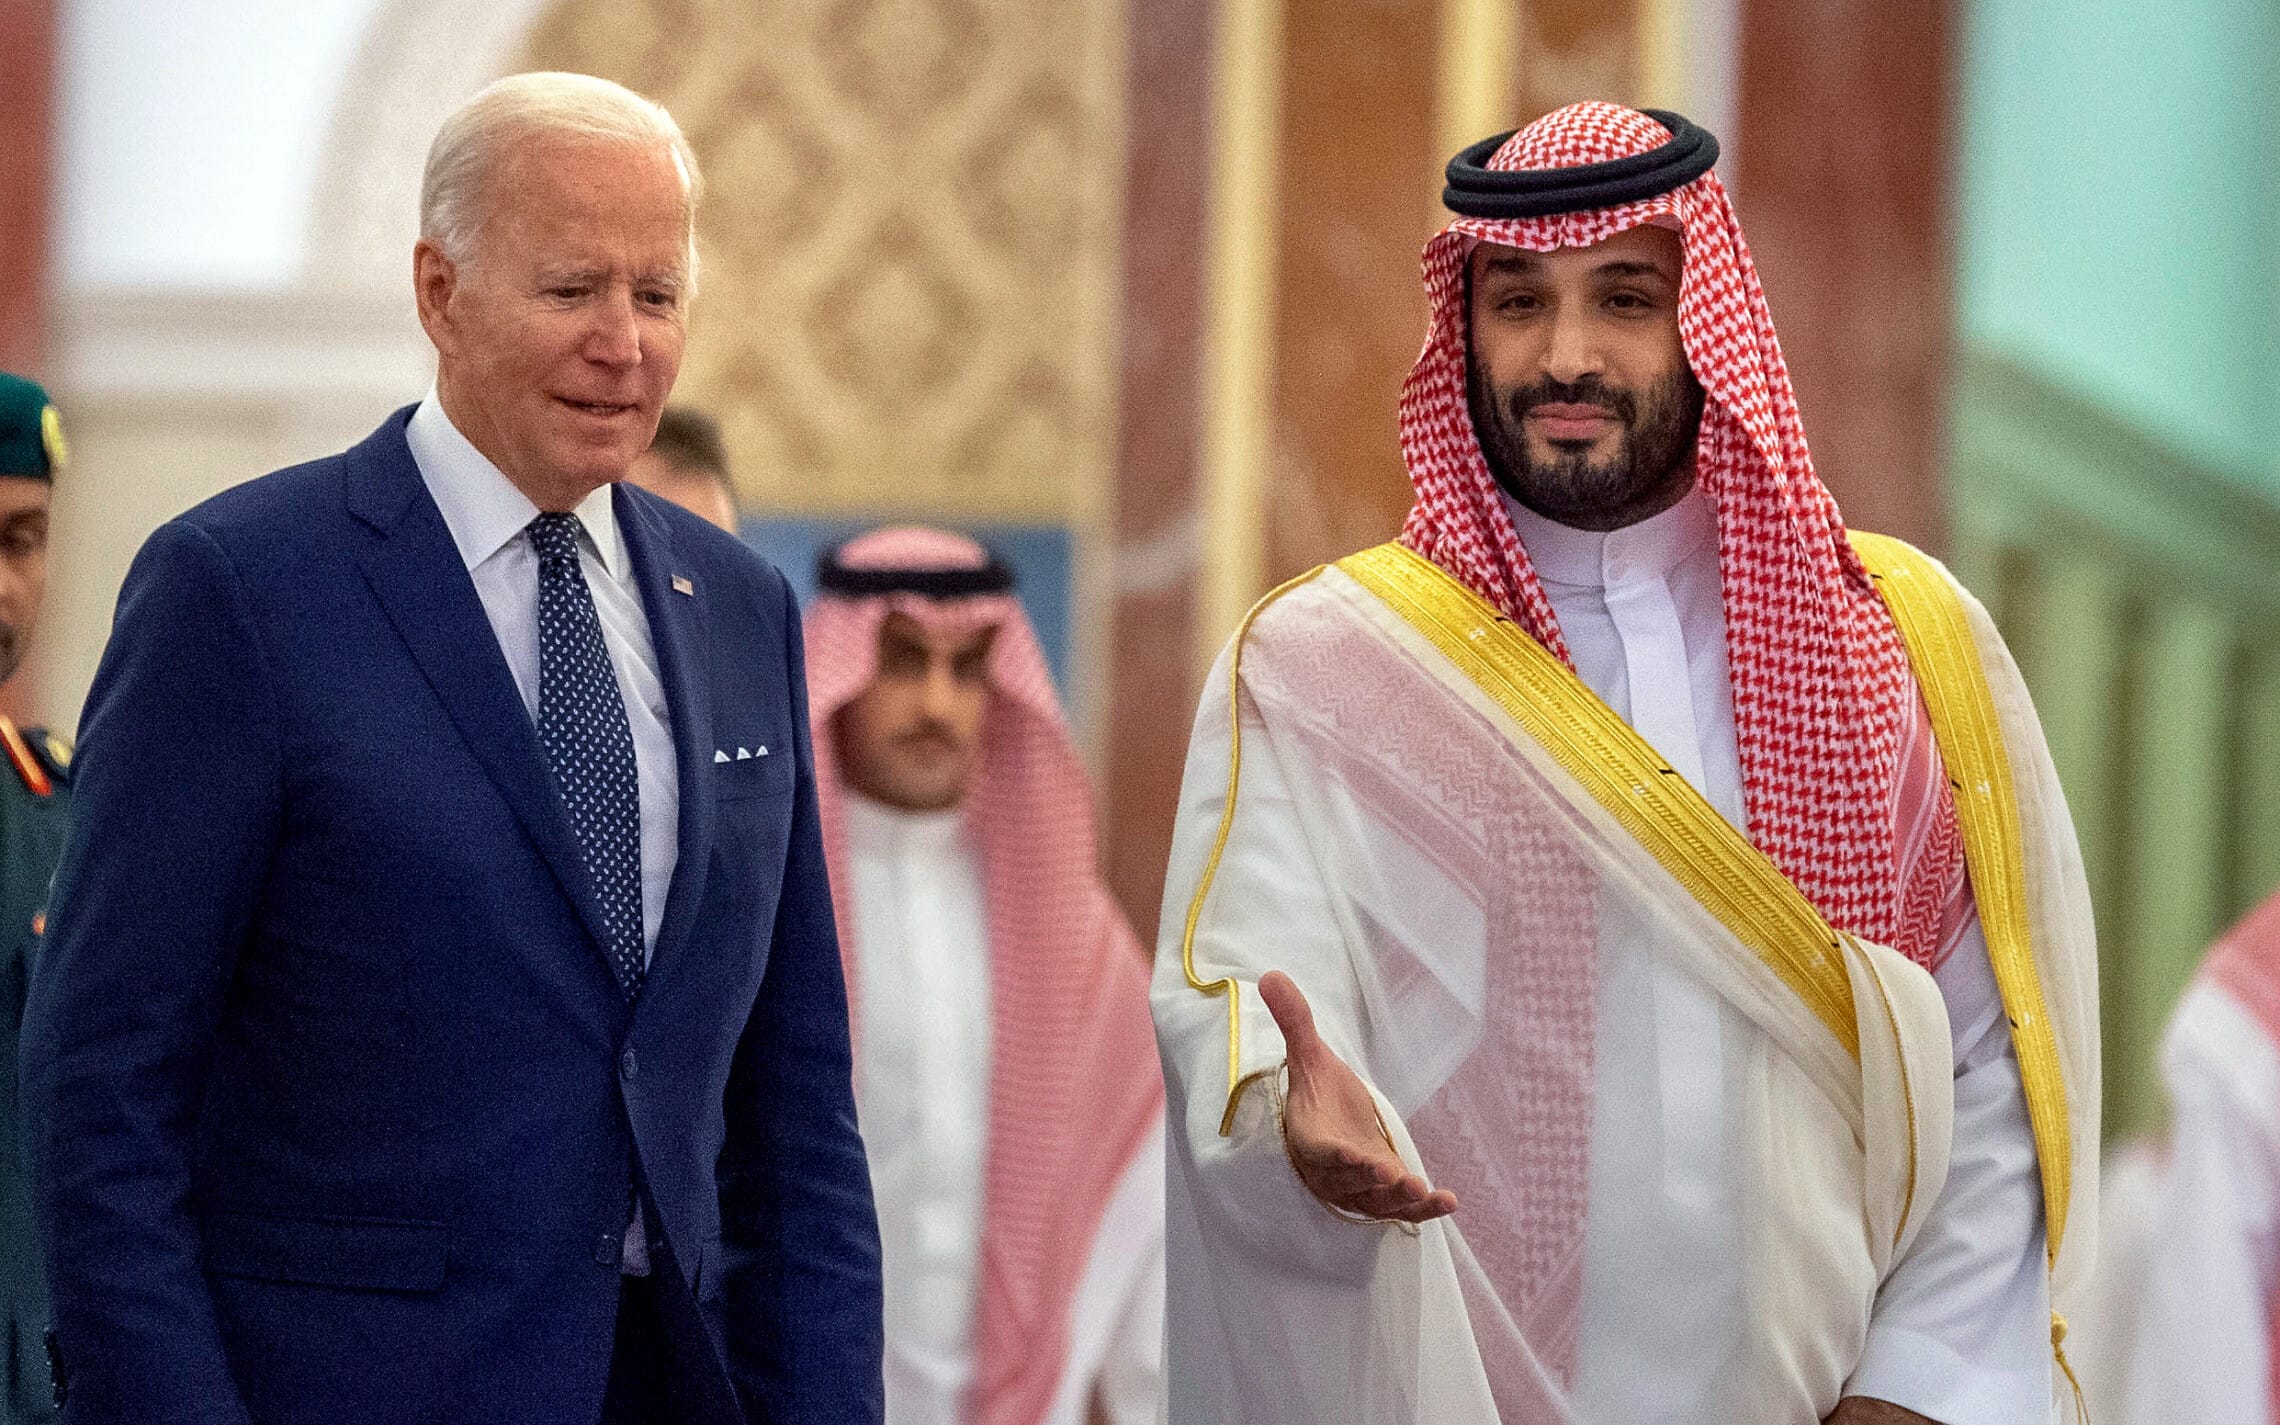 יורש העצר הסעודי מוחמד בן סלמאן מקבל את פניו של נשיא ארצות הברית ג&#8217;ו ביידן בעת ביקור בריאד, בירת ערב הסעודית, 15 ביולי 2022 (צילום: Bandar Aljaloud/Saudi Royal Palace via AP, File)